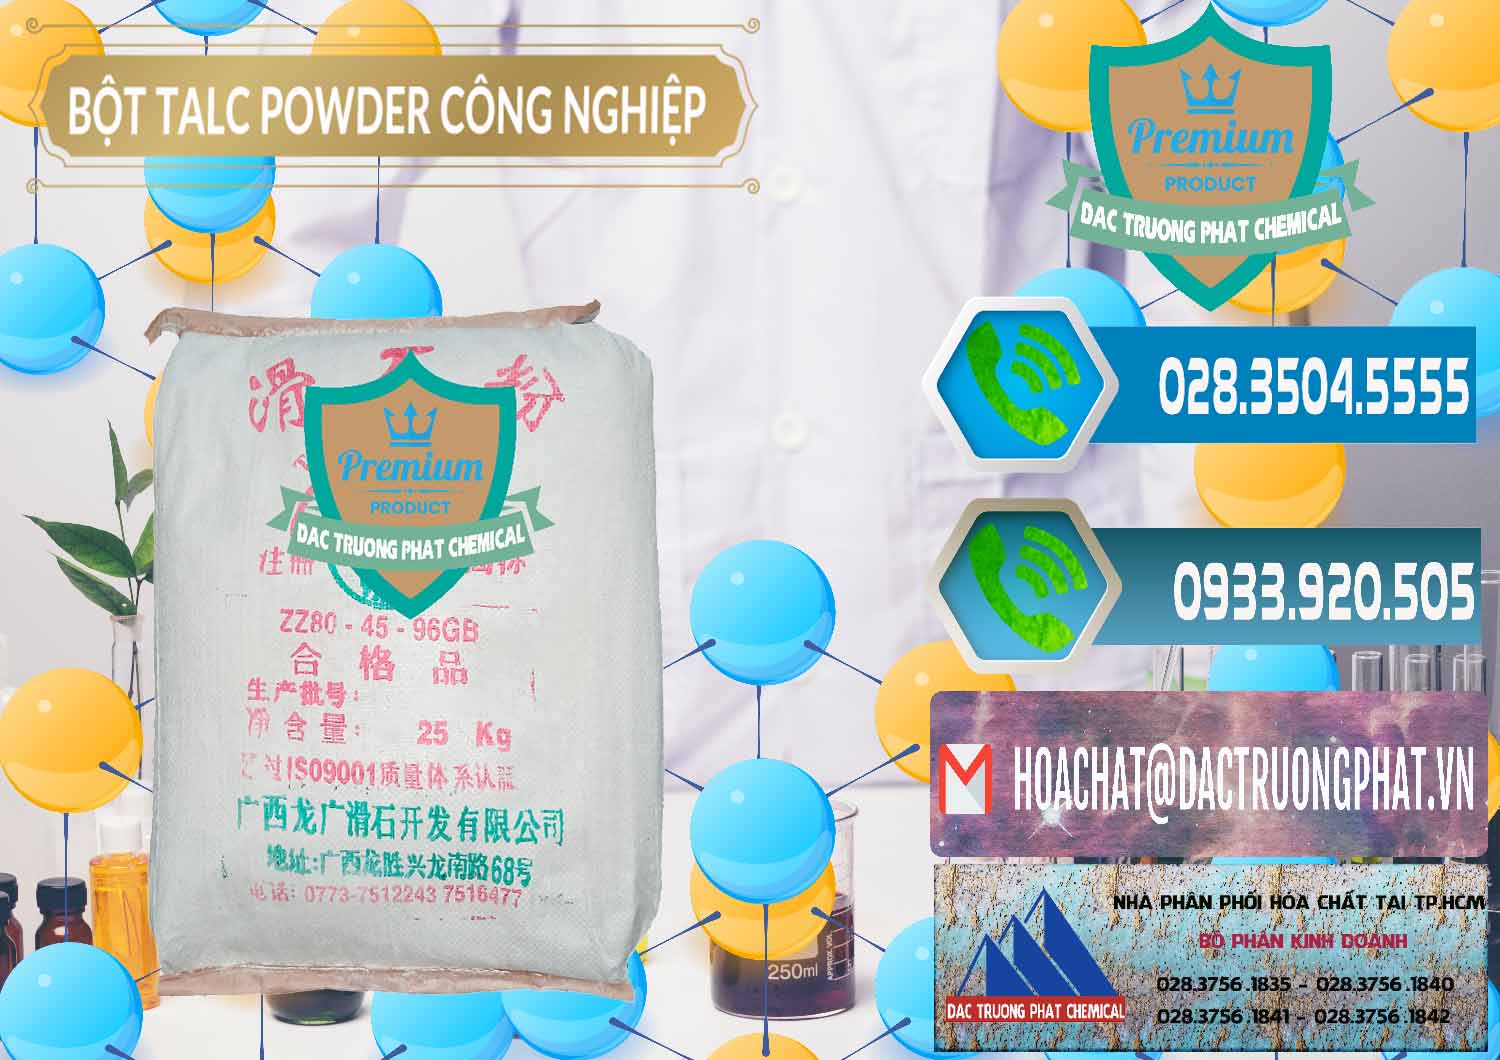 Chuyên cung ứng - bán Bột Talc Powder Công Nghiệp Trung Quốc China - 0037 - Nơi cung cấp _ phân phối hóa chất tại TP.HCM - congtyhoachat.net